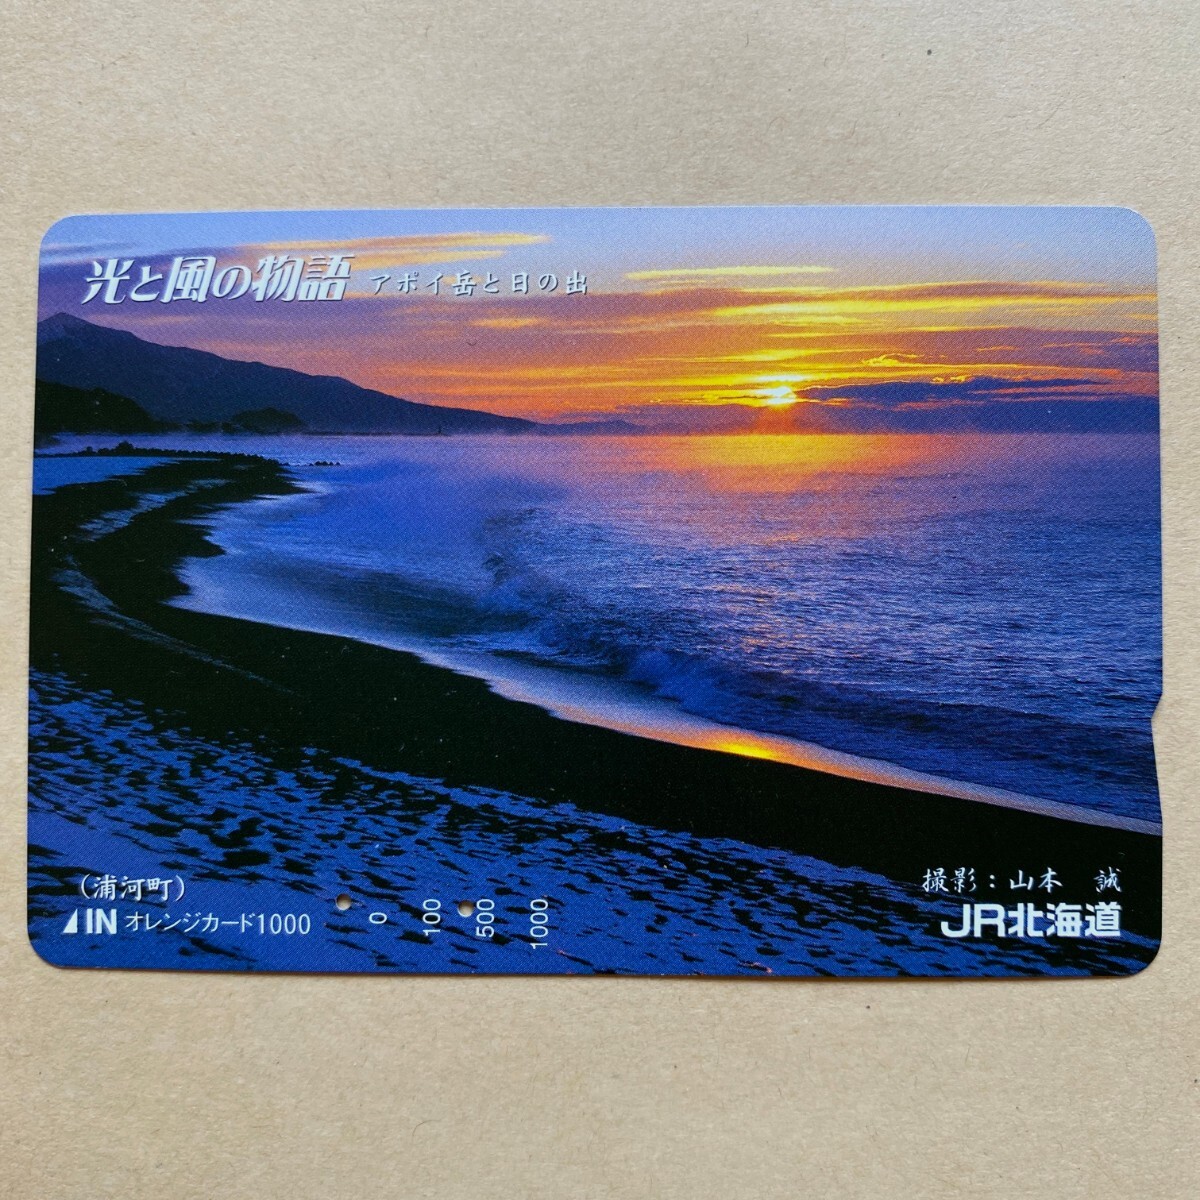 【使用済】 オレンジカード JR北海道 光と風の物語 アポイ岳と日の出の画像1